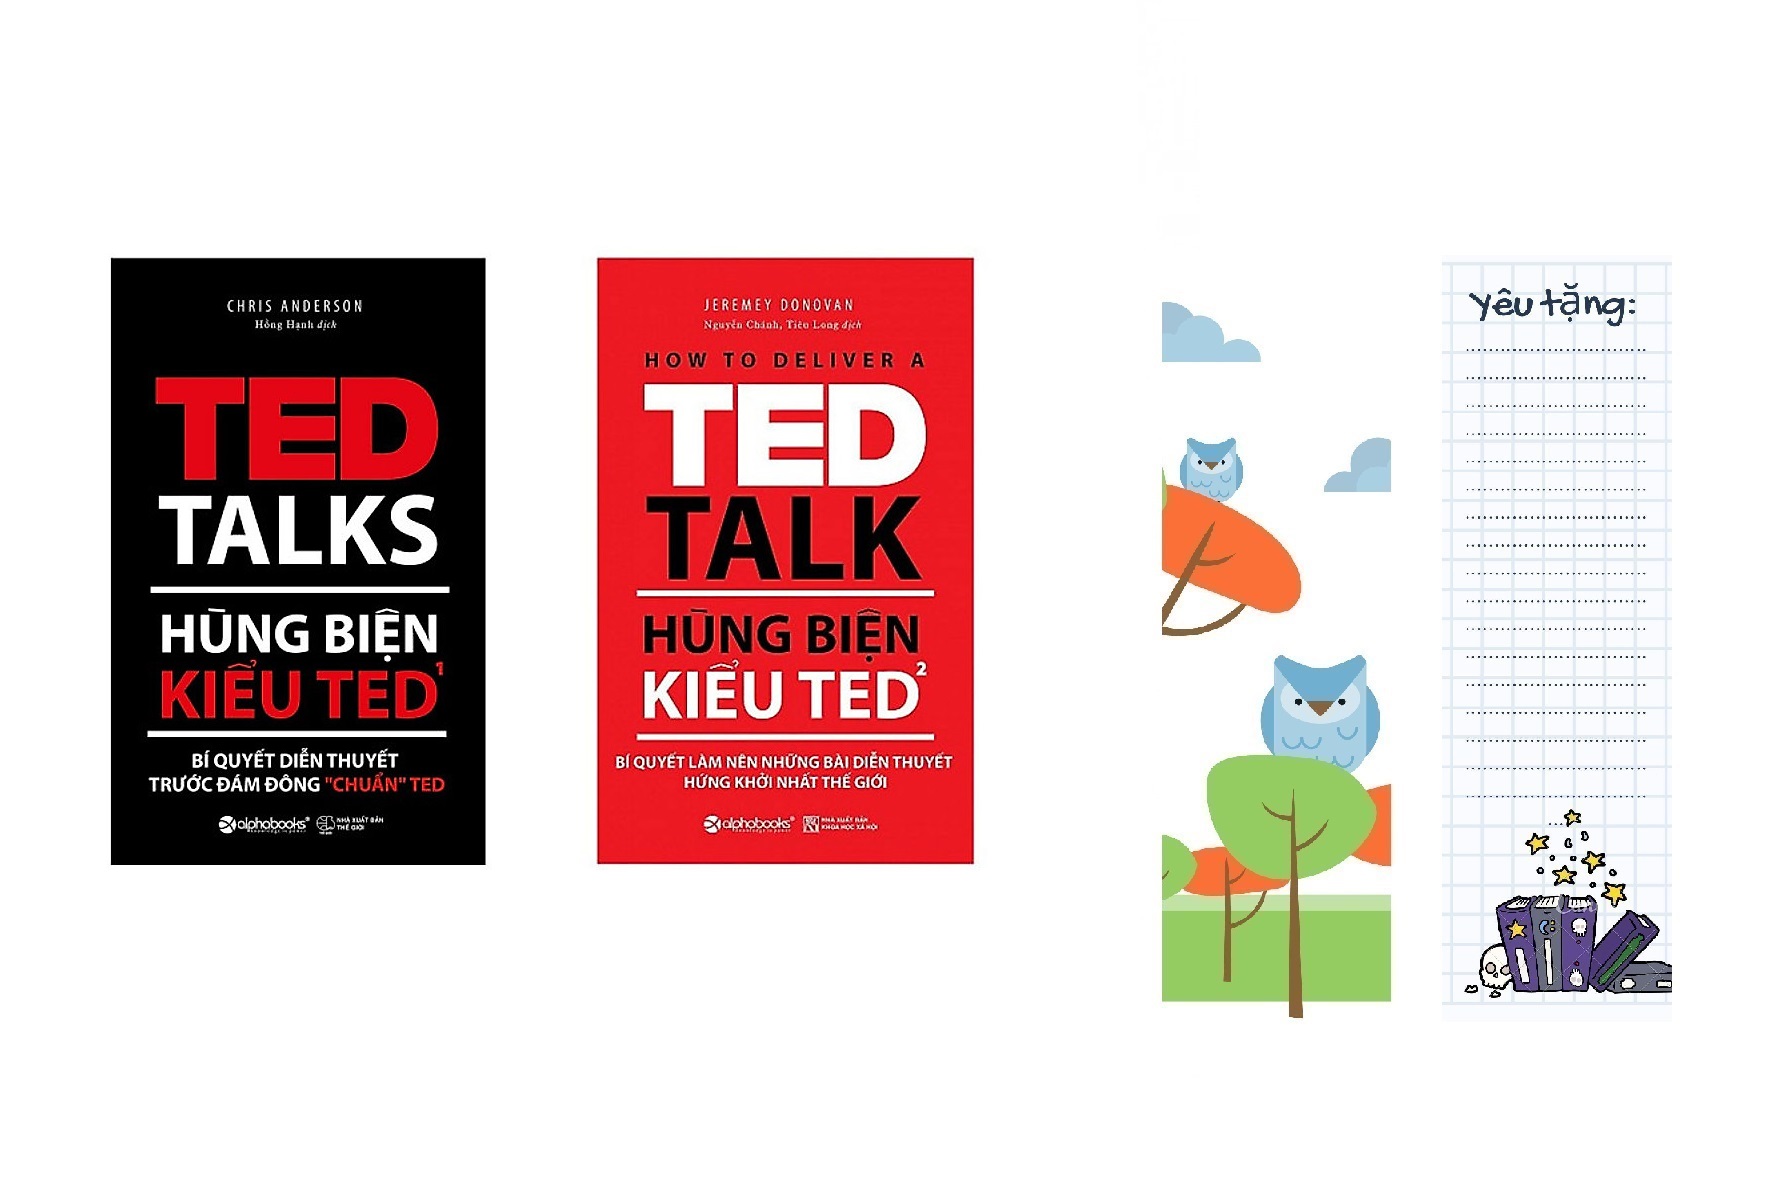 Bộ Sách Hay Nhất Về Hùng Biện ( Hùng biện kiểu TED1: Bí quyết diễn thuyết trước đám đông “chuẩn” TED + Hùng biện kiểu TED2: Bí quyết làm nên những bài diễn thuyết hứng khởi nhất thế giới ) tặng kèm bookmark Sáng Tạo